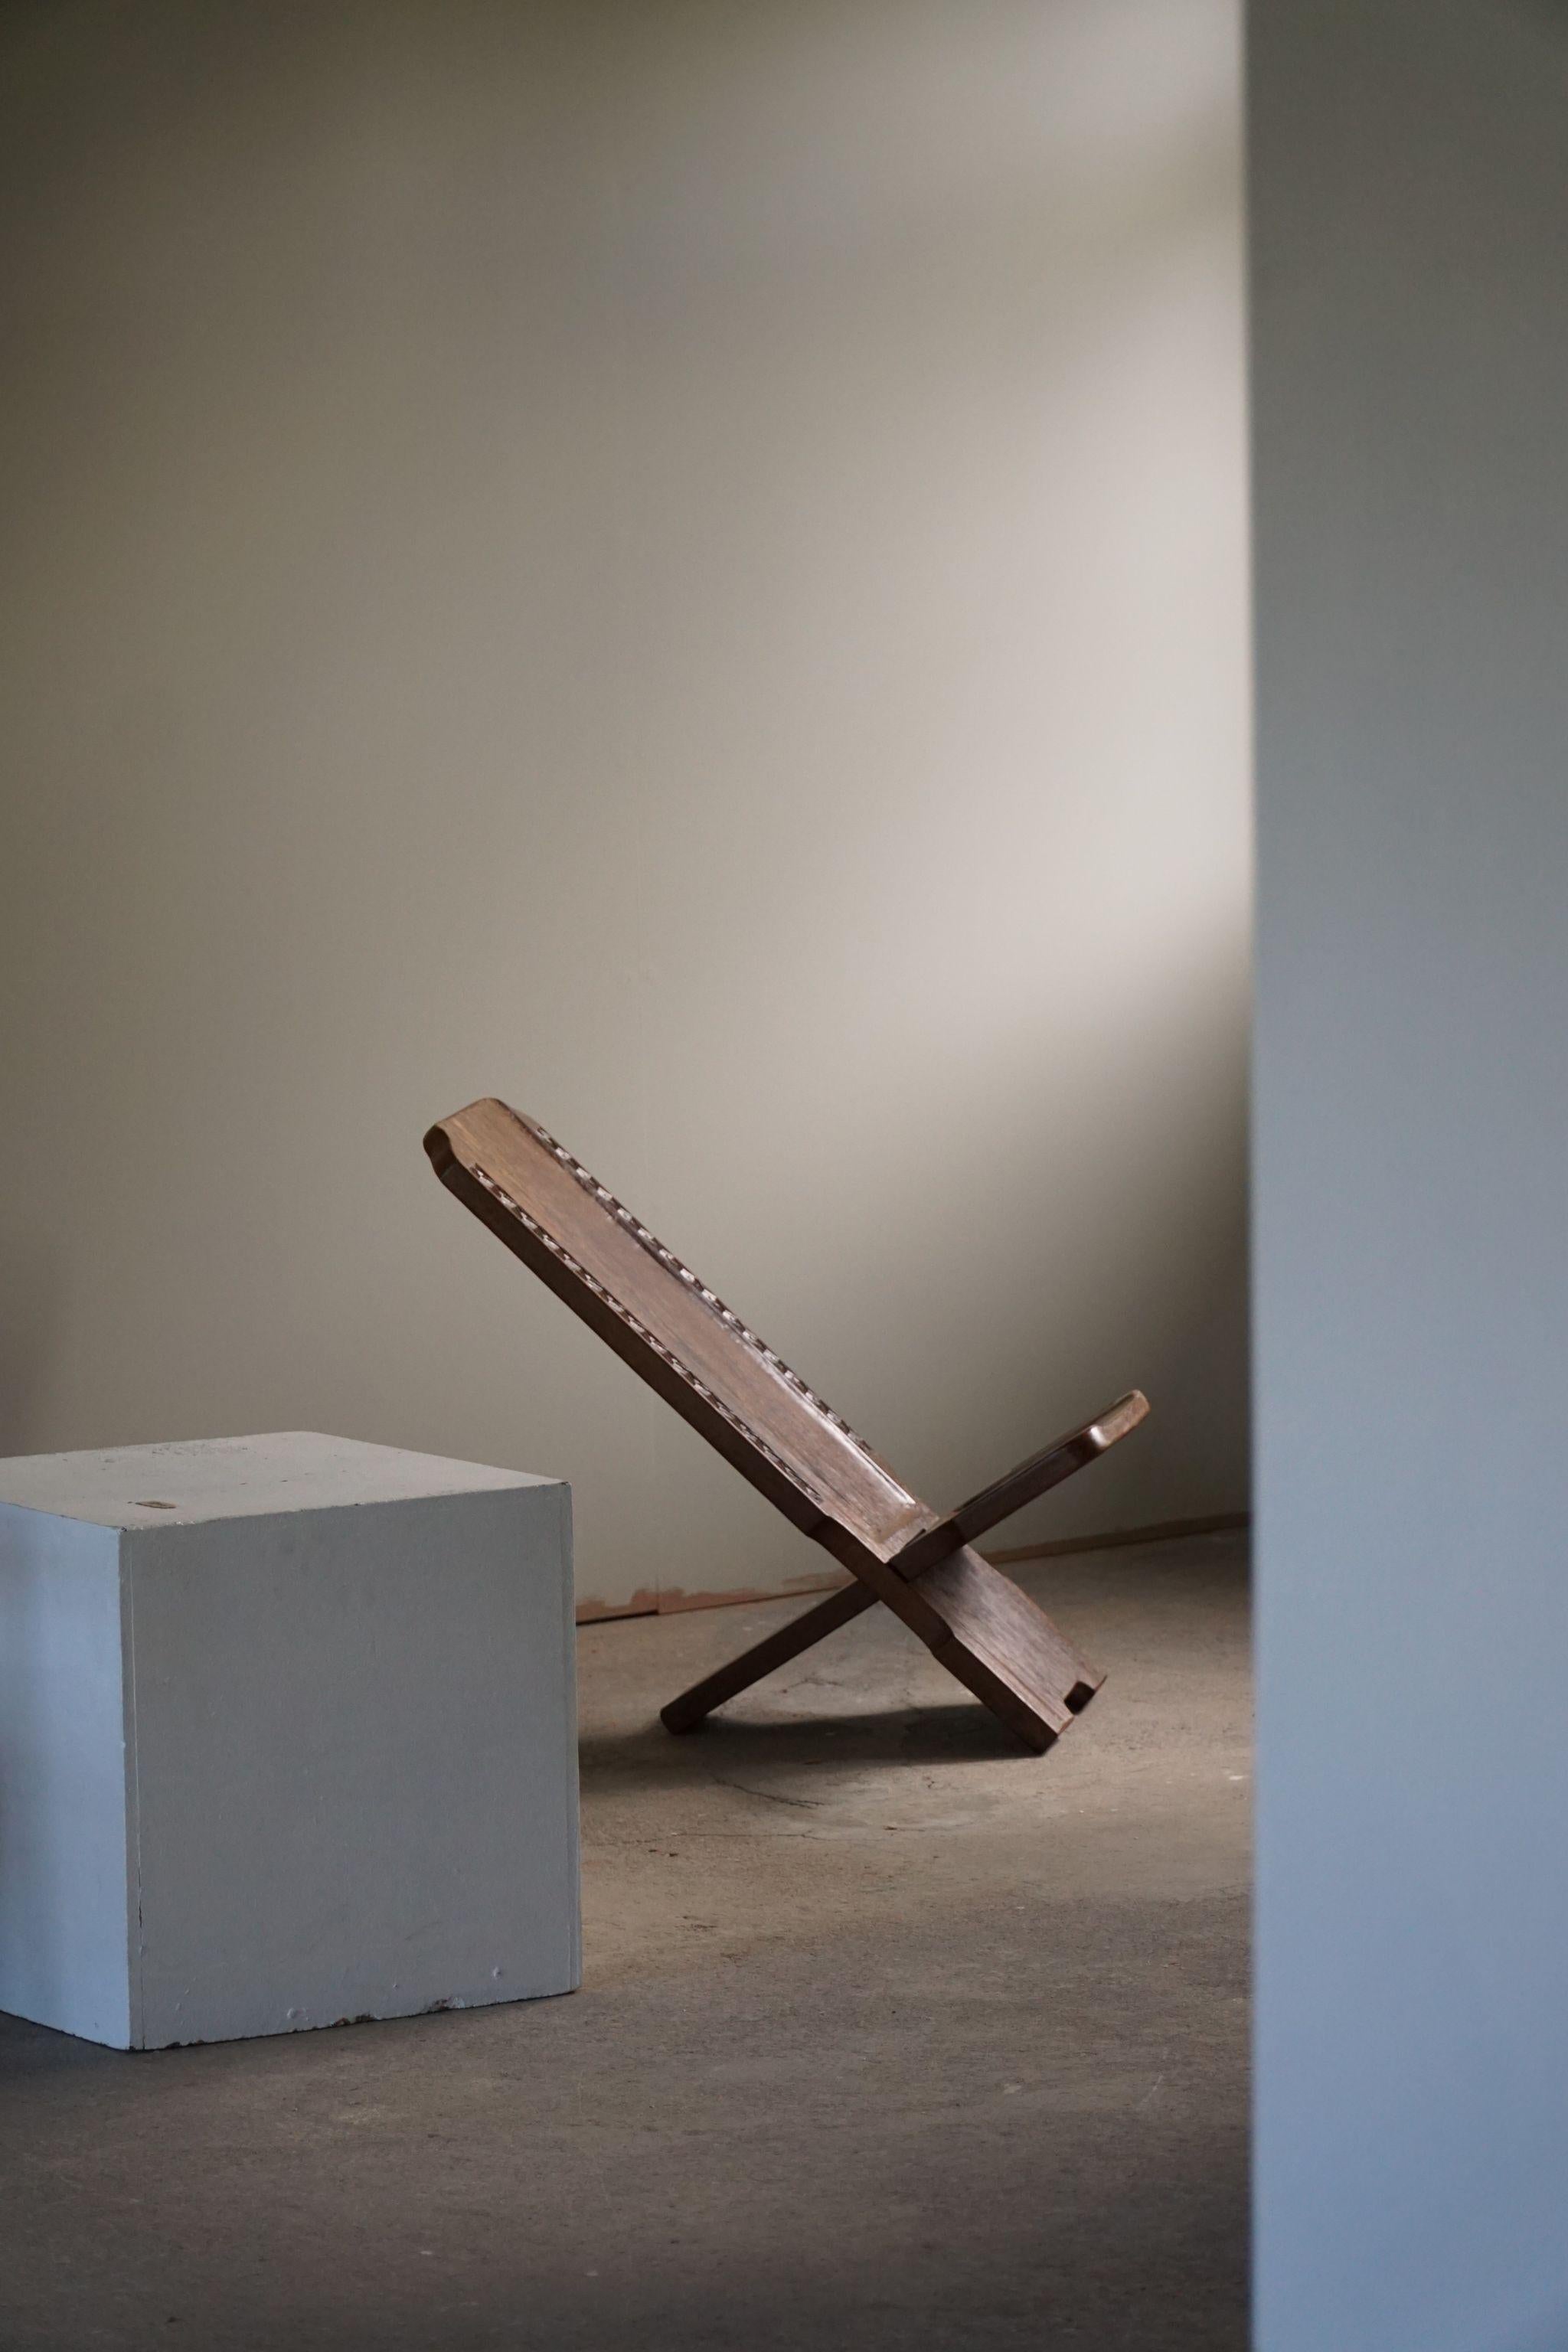 Magnifique chaise pliante africaine en bois massif sculptée à la main. La chaise à palabre est un type de mobilier africain traditionnel. Magnifiquement fabriqué à la main et décoré de motifs géométriques..

Un bel objet wabi sabi avec une belle